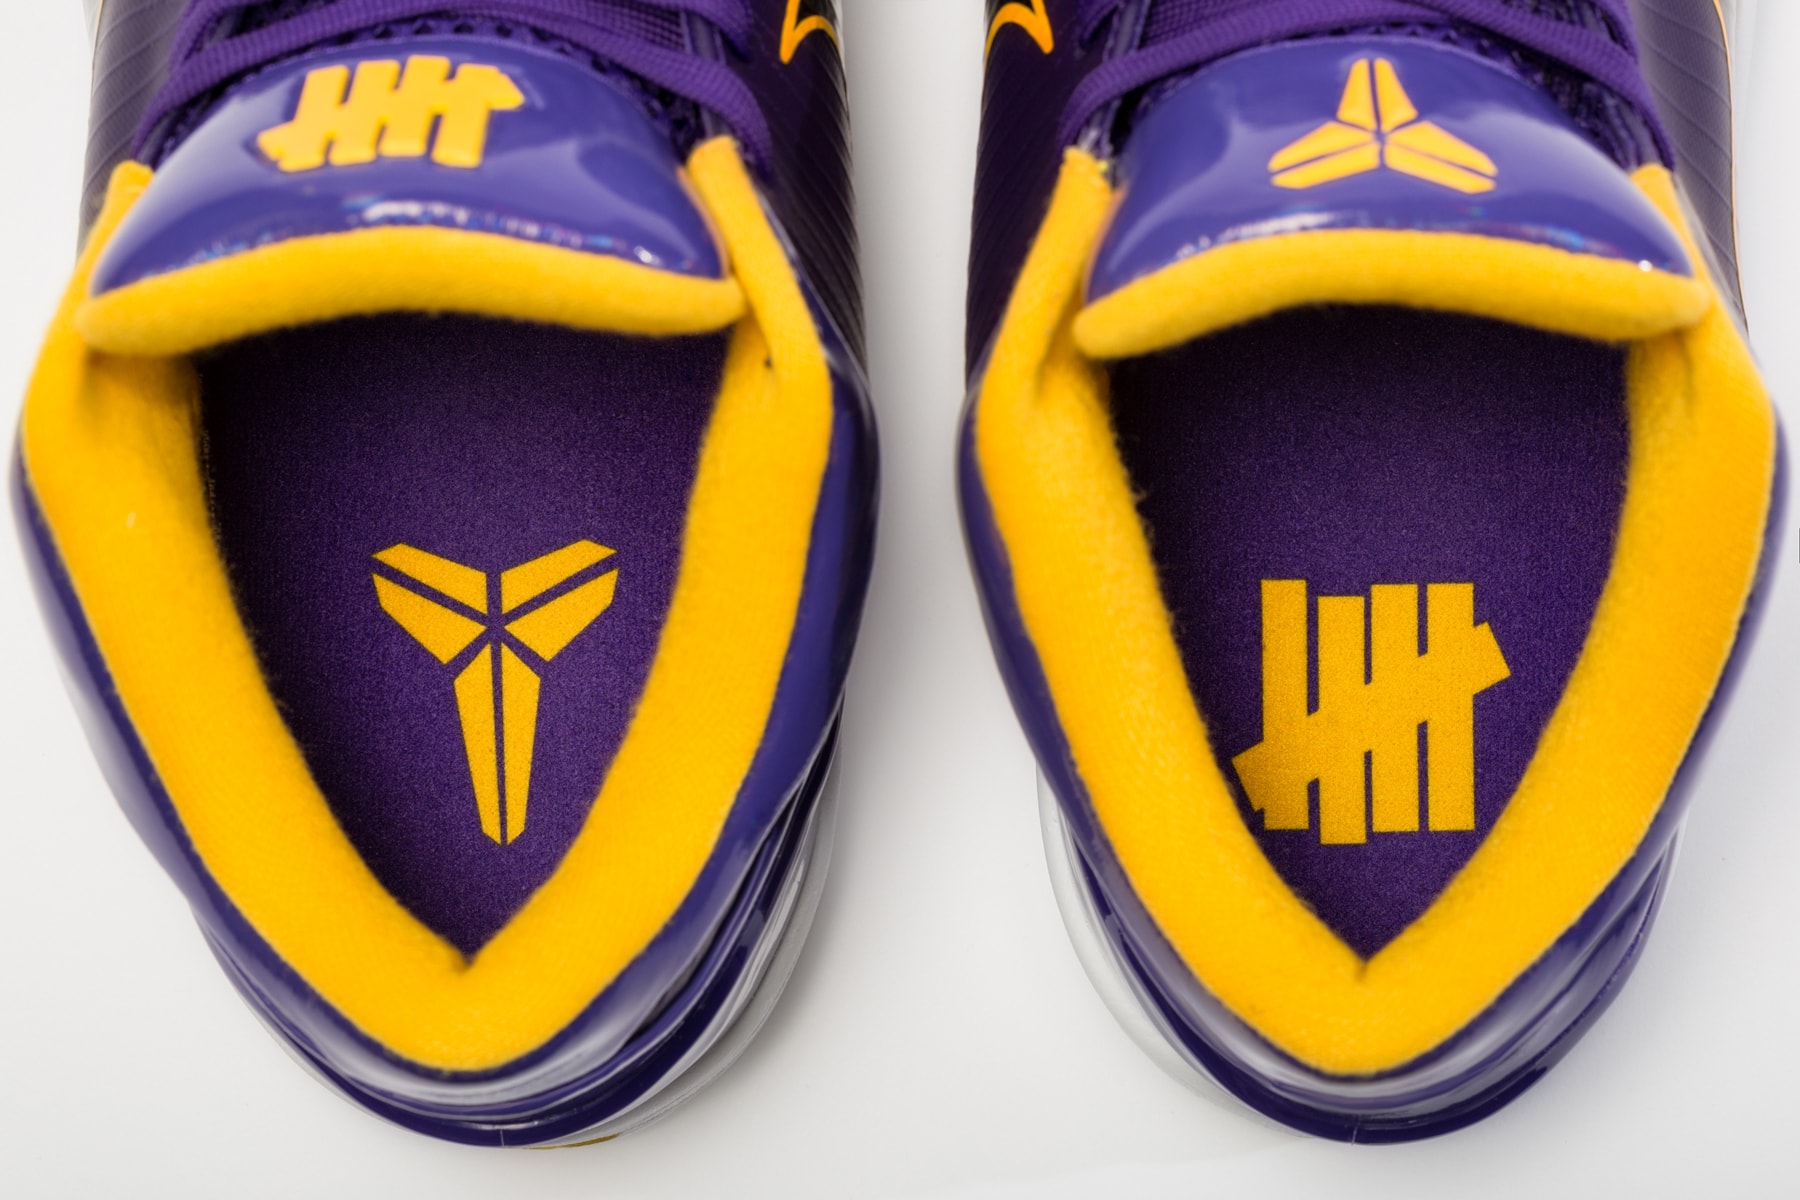 Nike Kobe 4 Protro Undftd 'Undefeated - LA Lakers' Shoes - 11